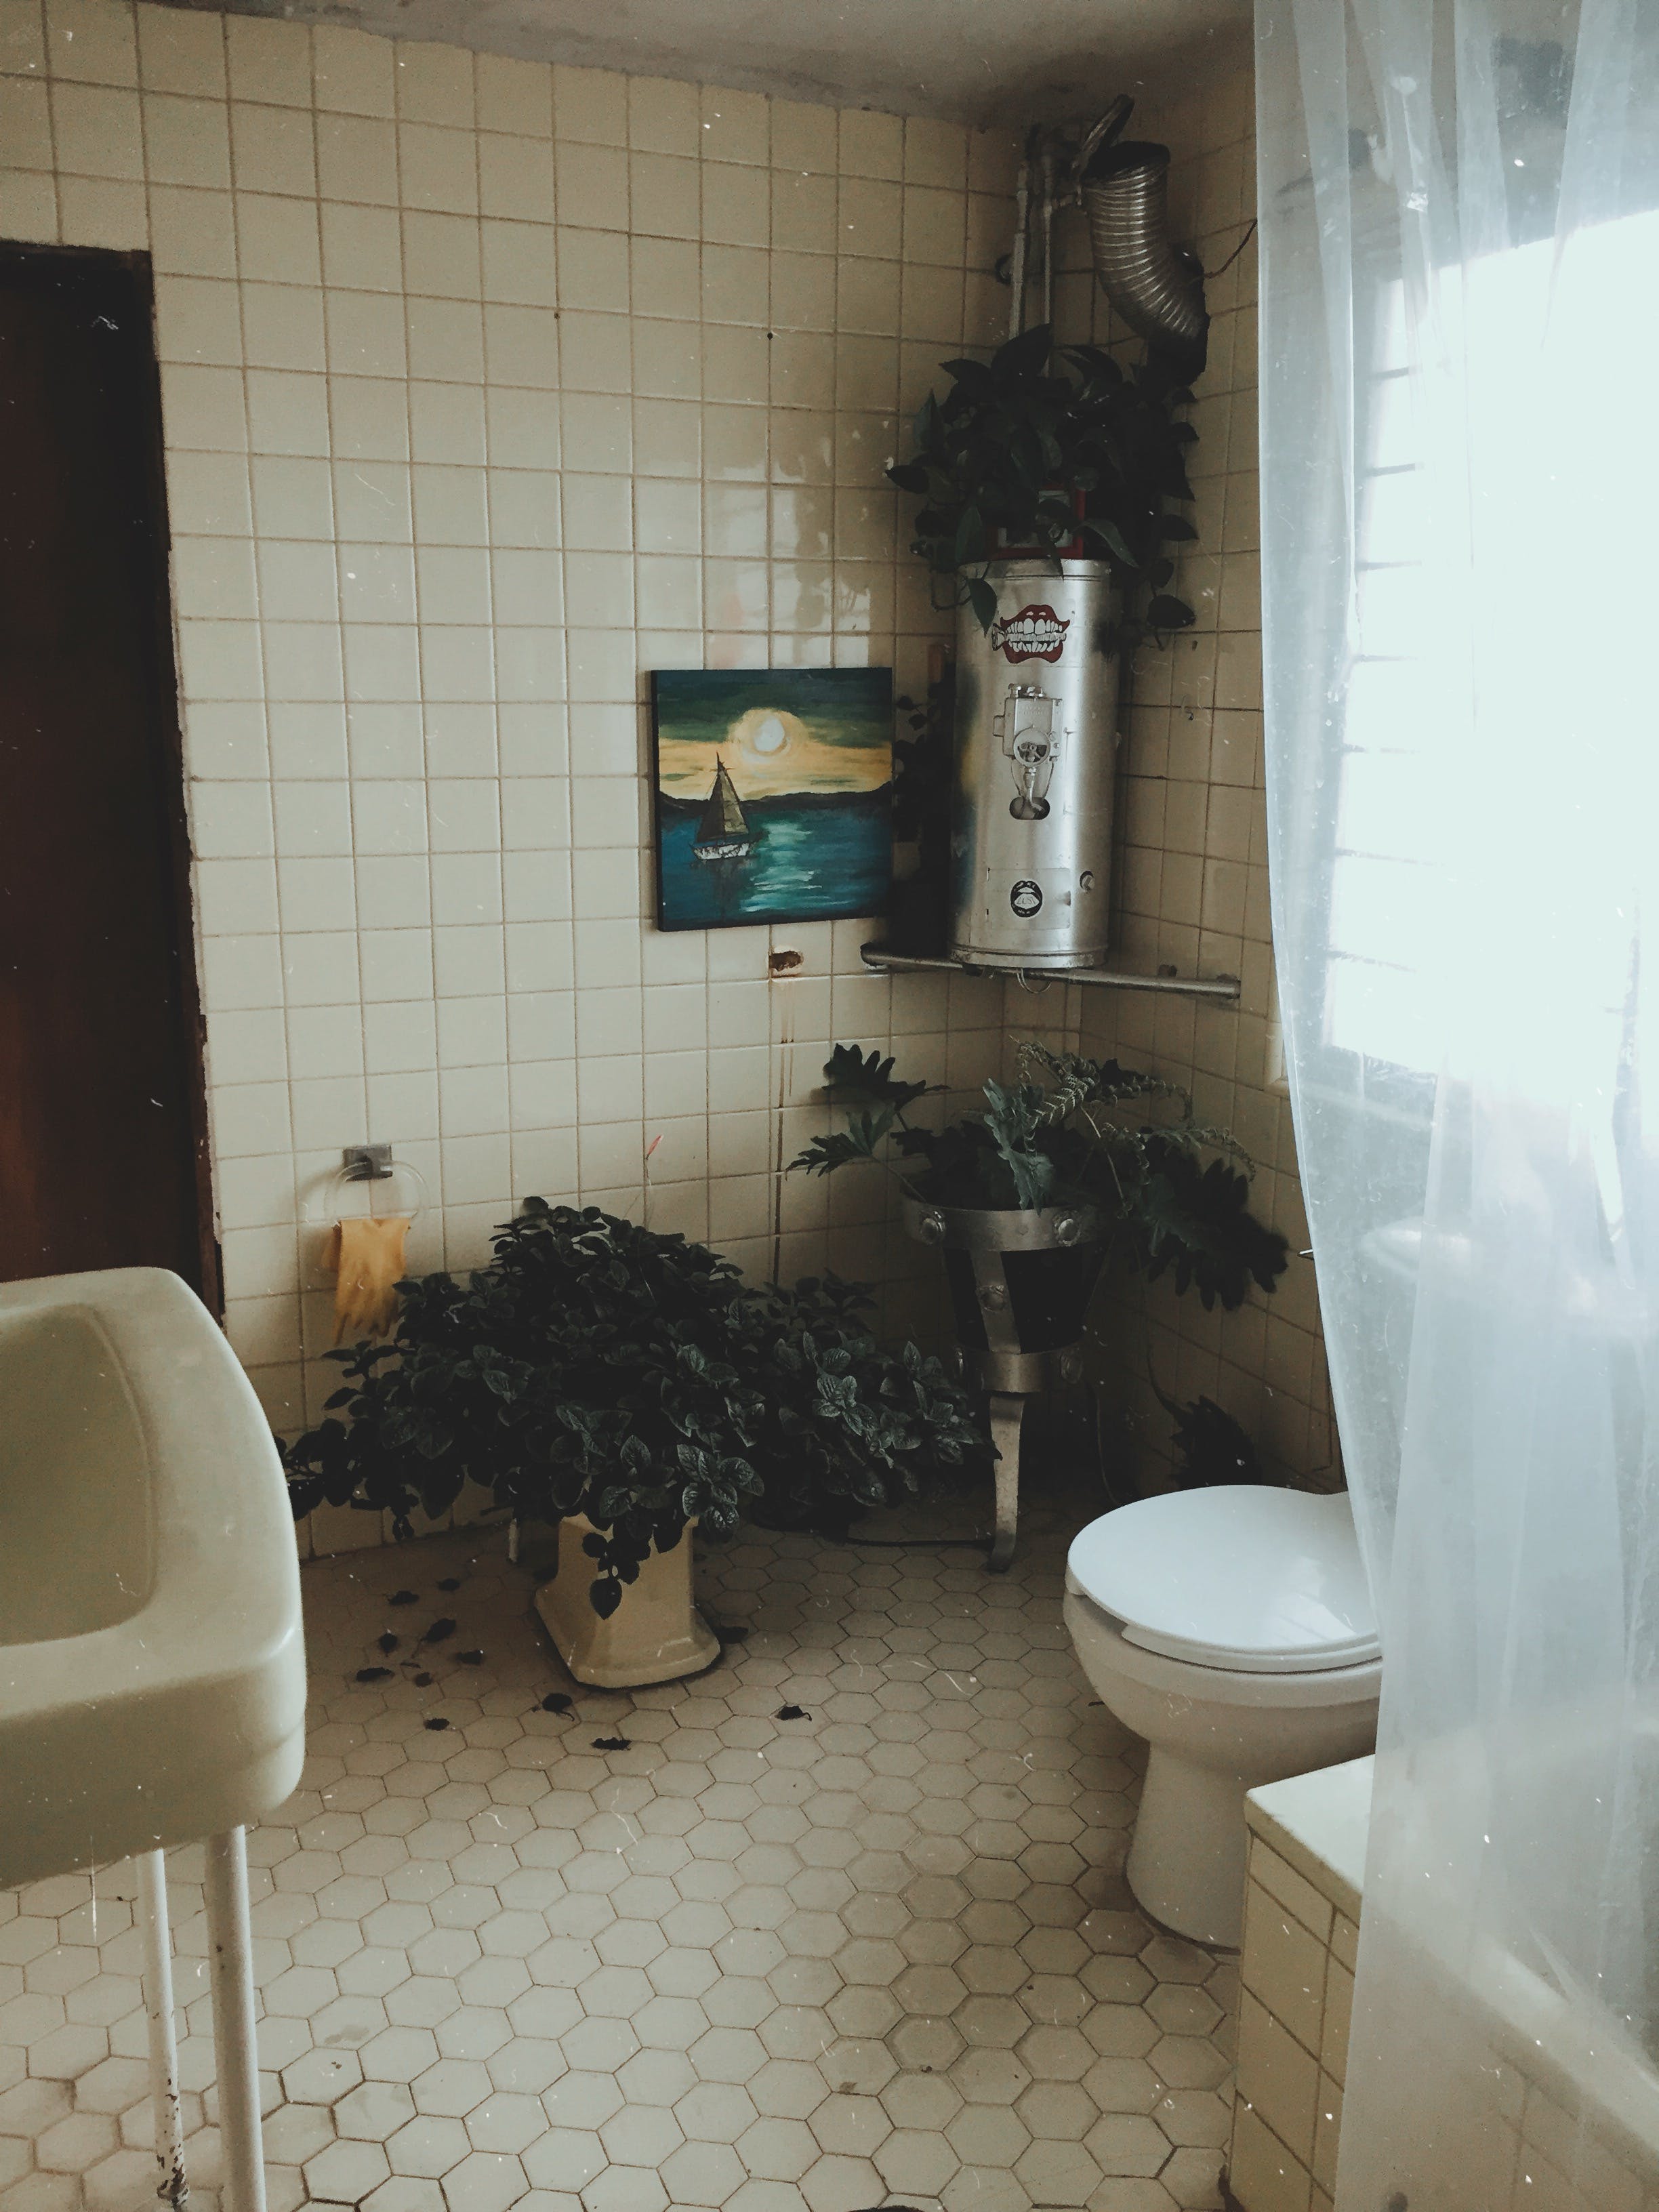 Ein Blick auf ein Badezimmer mit Toilette und Waschbecken | Quelle: Pexels